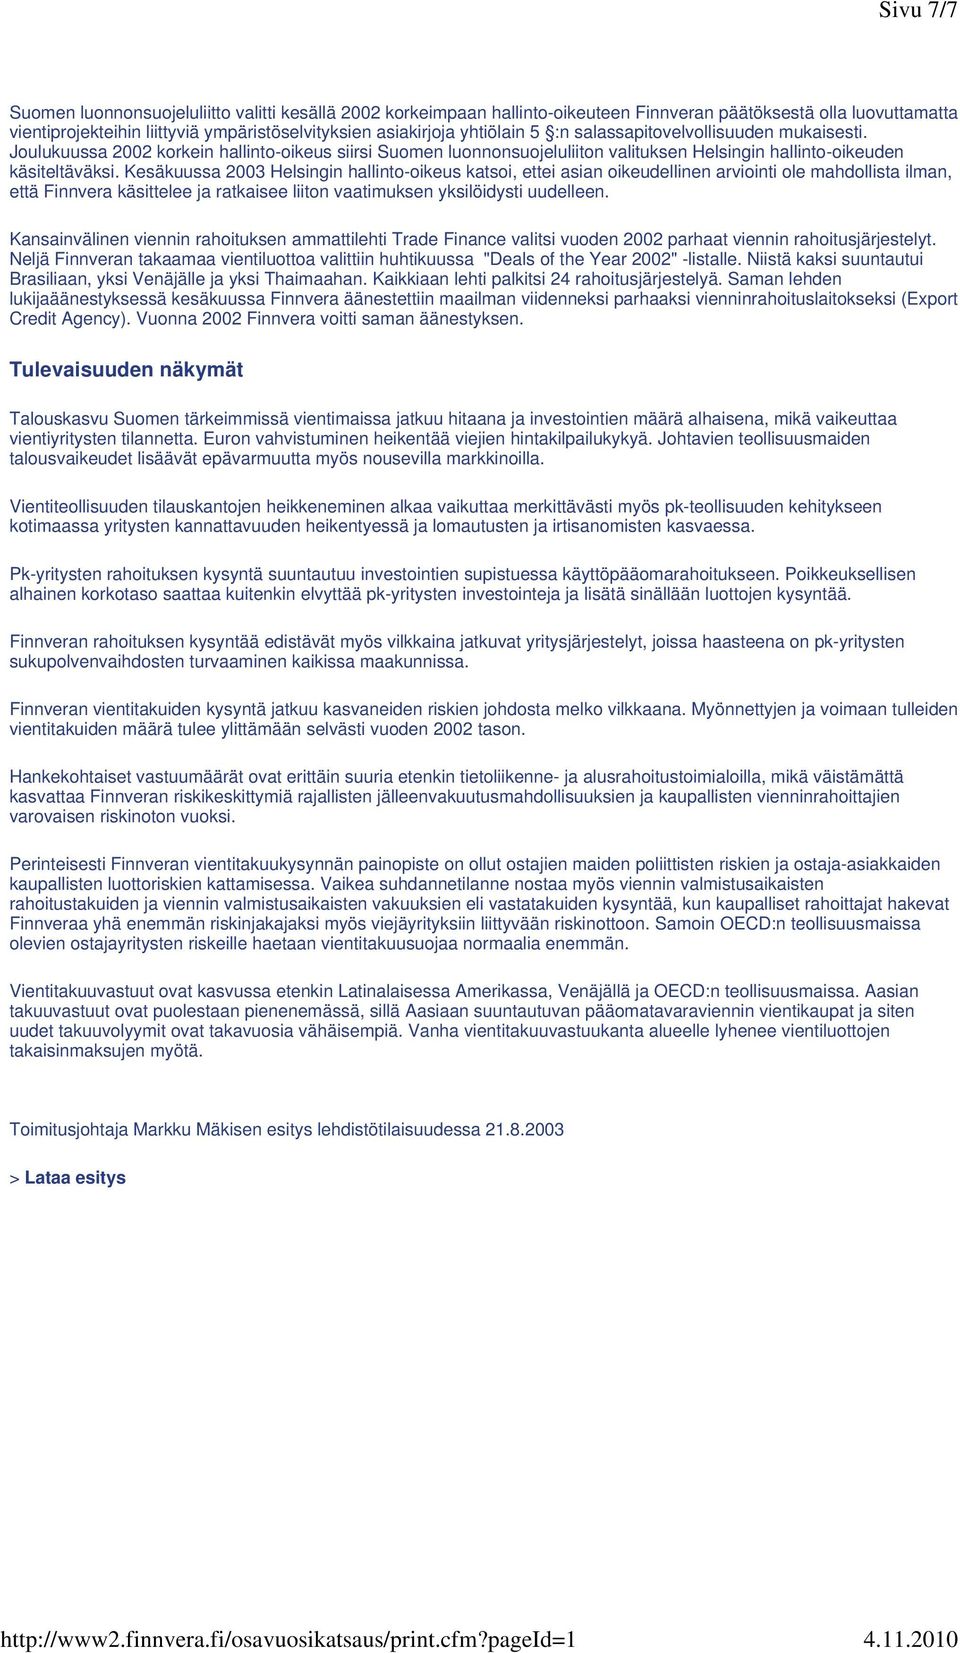 Kesäkuussa 2003 Helsingin hallinto-oikeus katsoi, ettei asian oikeudellinen arviointi ole mahdollista ilman, että Finnvera käsittelee ja ratkaisee liiton vaatimuksen yksilöidysti uudelleen.